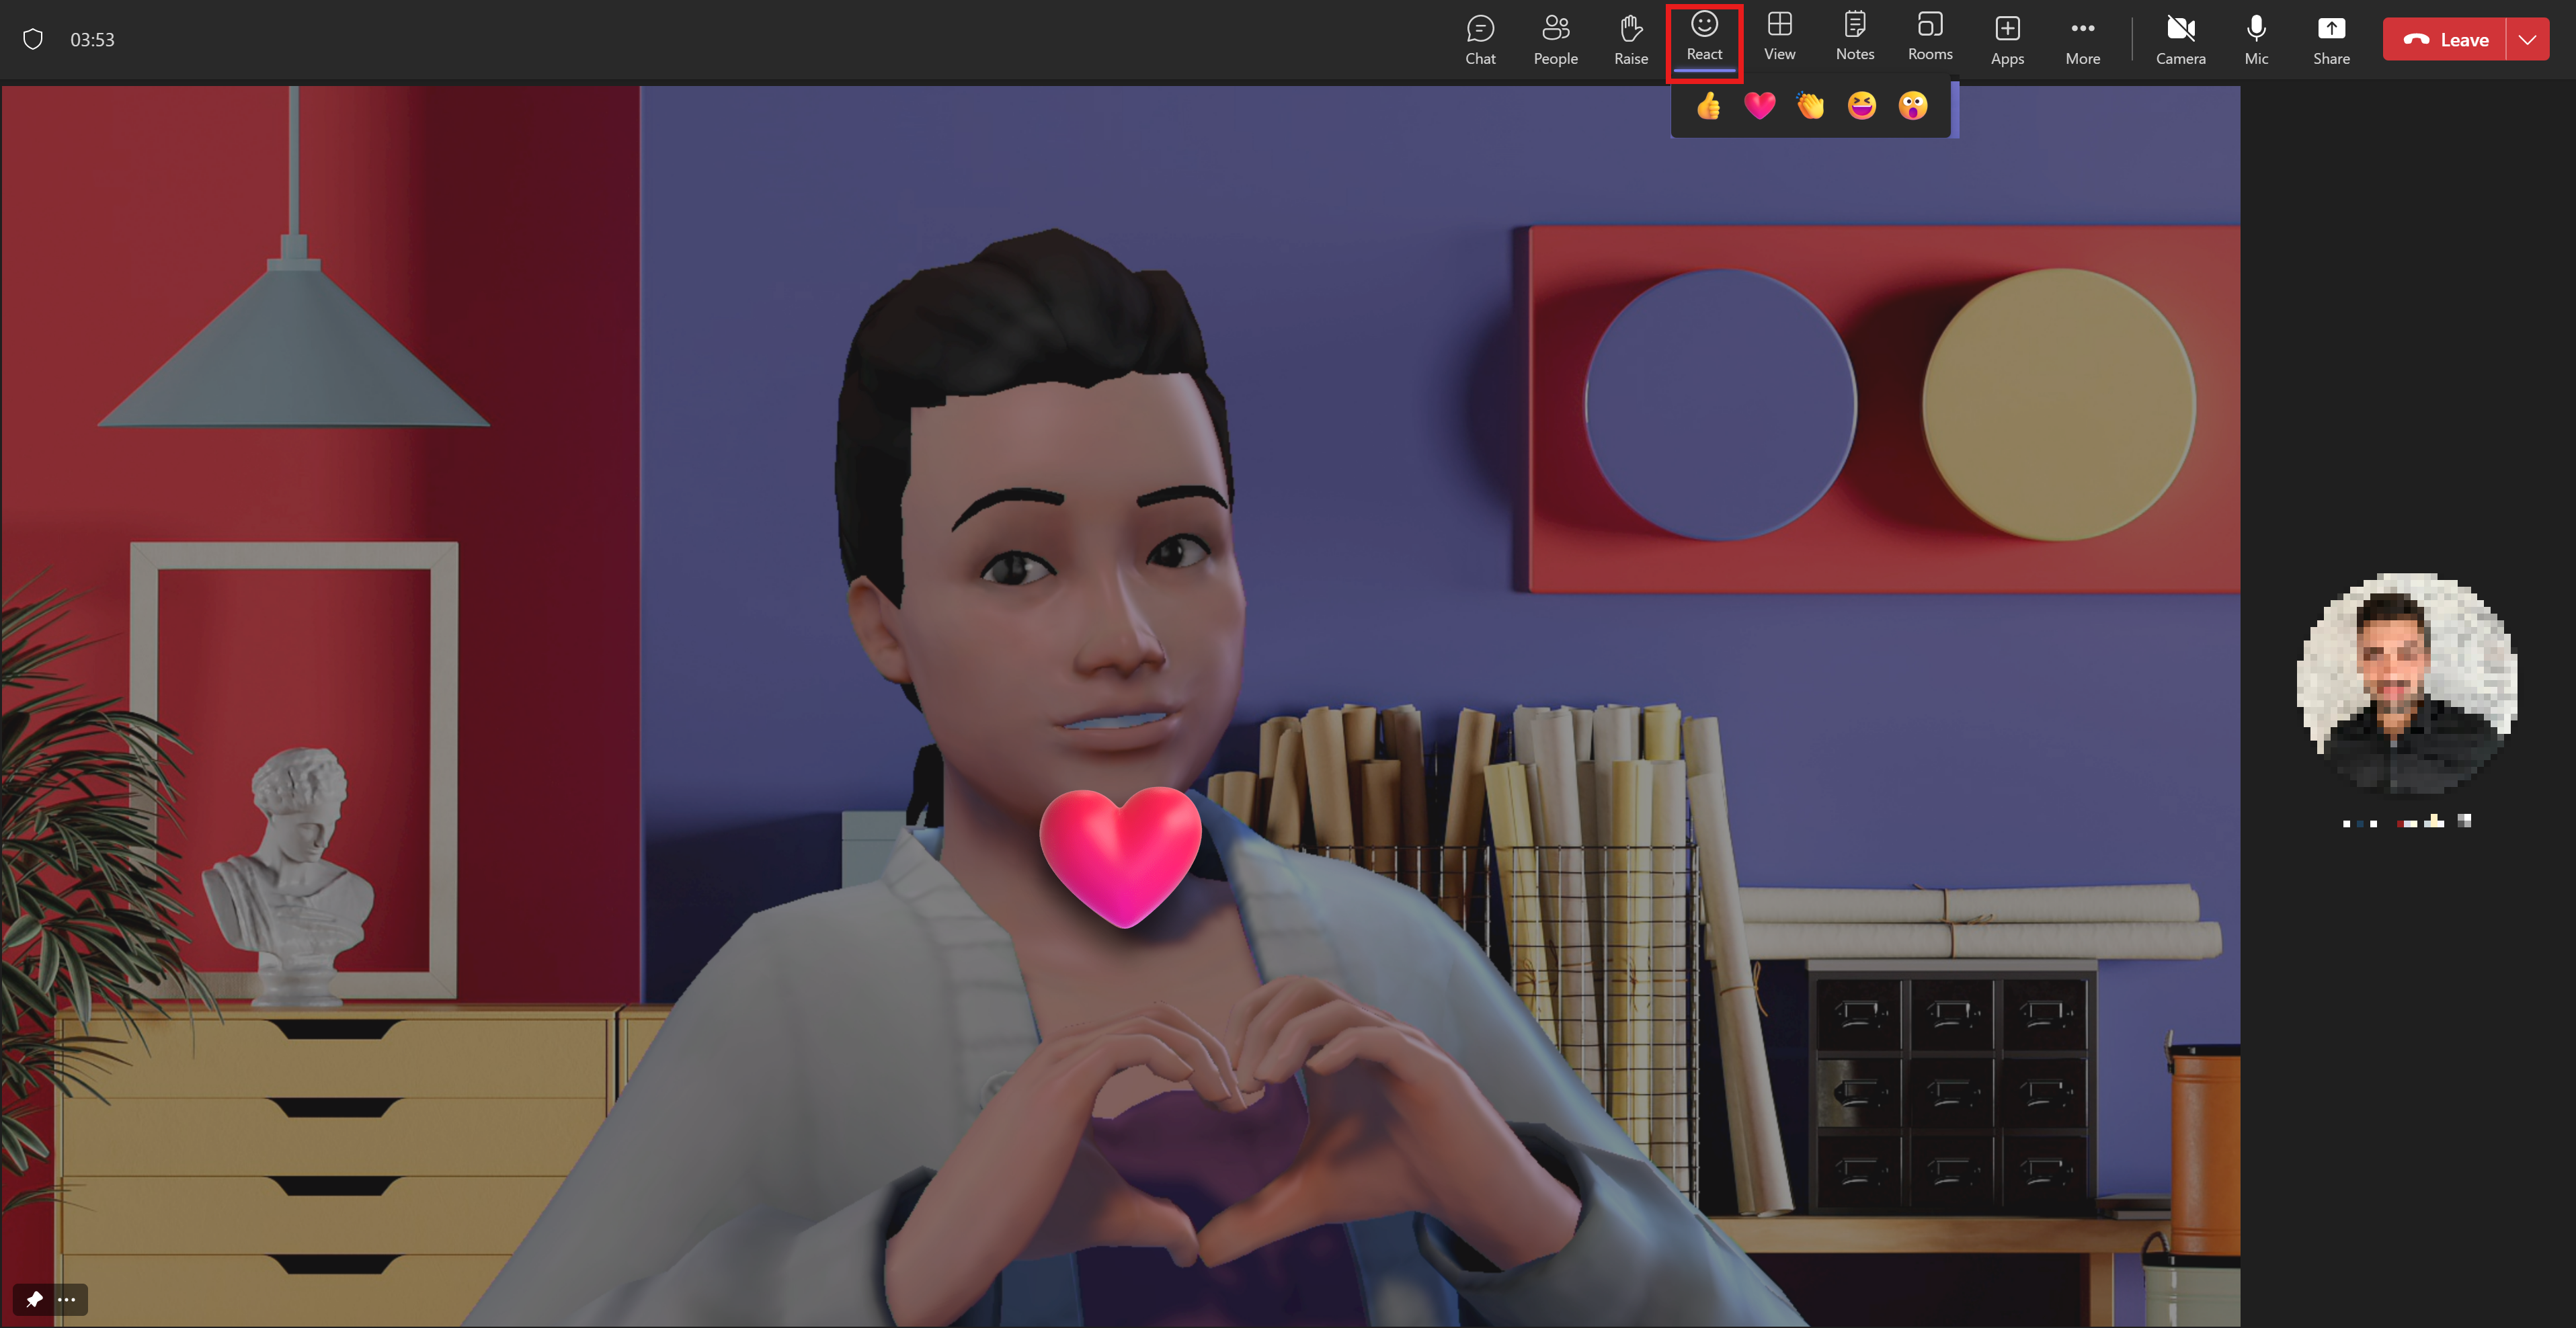 En avatar viser sin kjærlighet ved å gjøre et hjerte med hendene